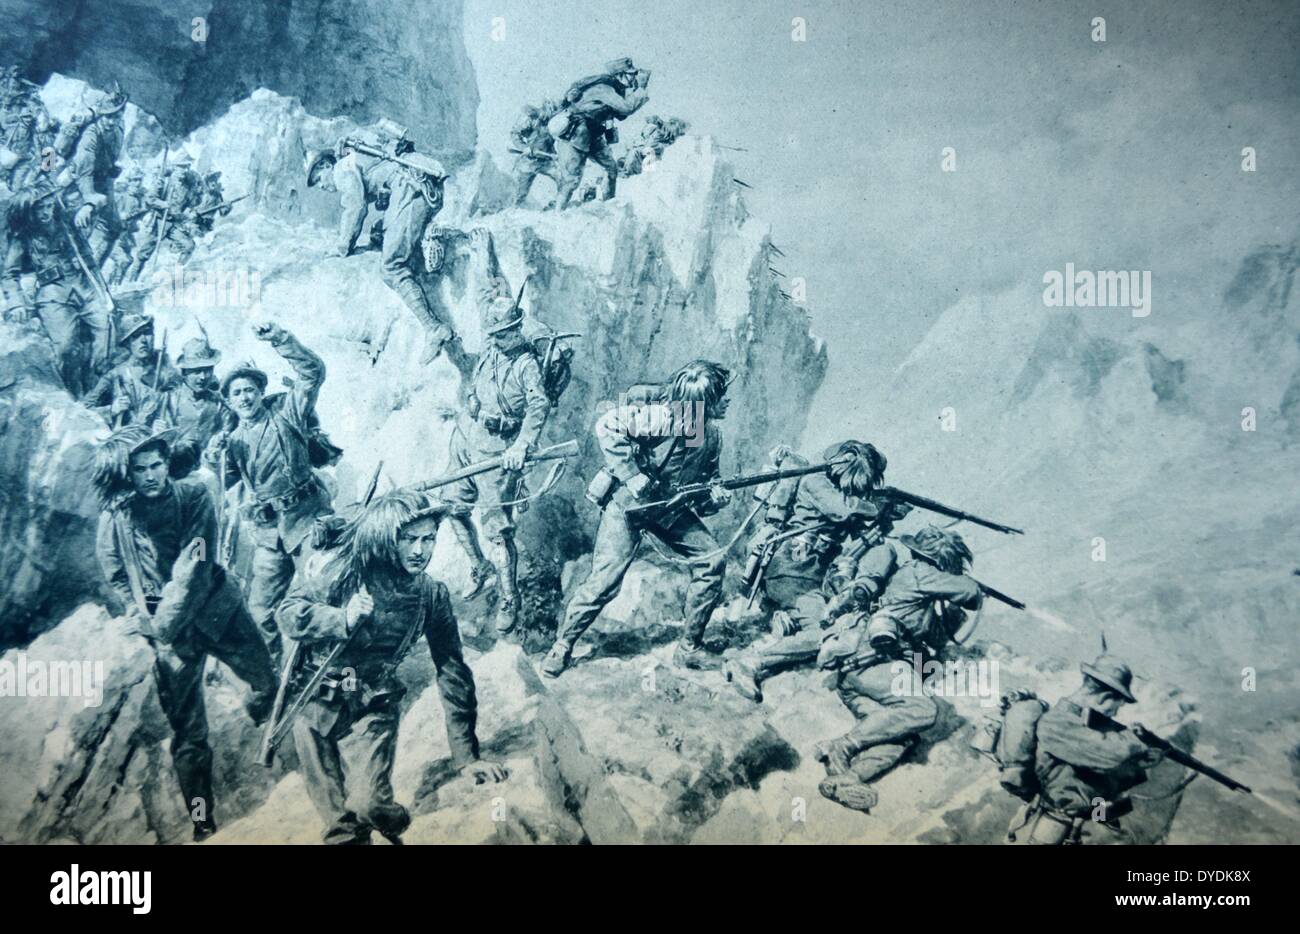 Alpinisti dilettanti così come soldati - Italia il famoso truppe alpine la forzatura di un passaggio di frontiera nelle Alpi Carniche. La Prima guerra mondiale, 1915. Foto Stock